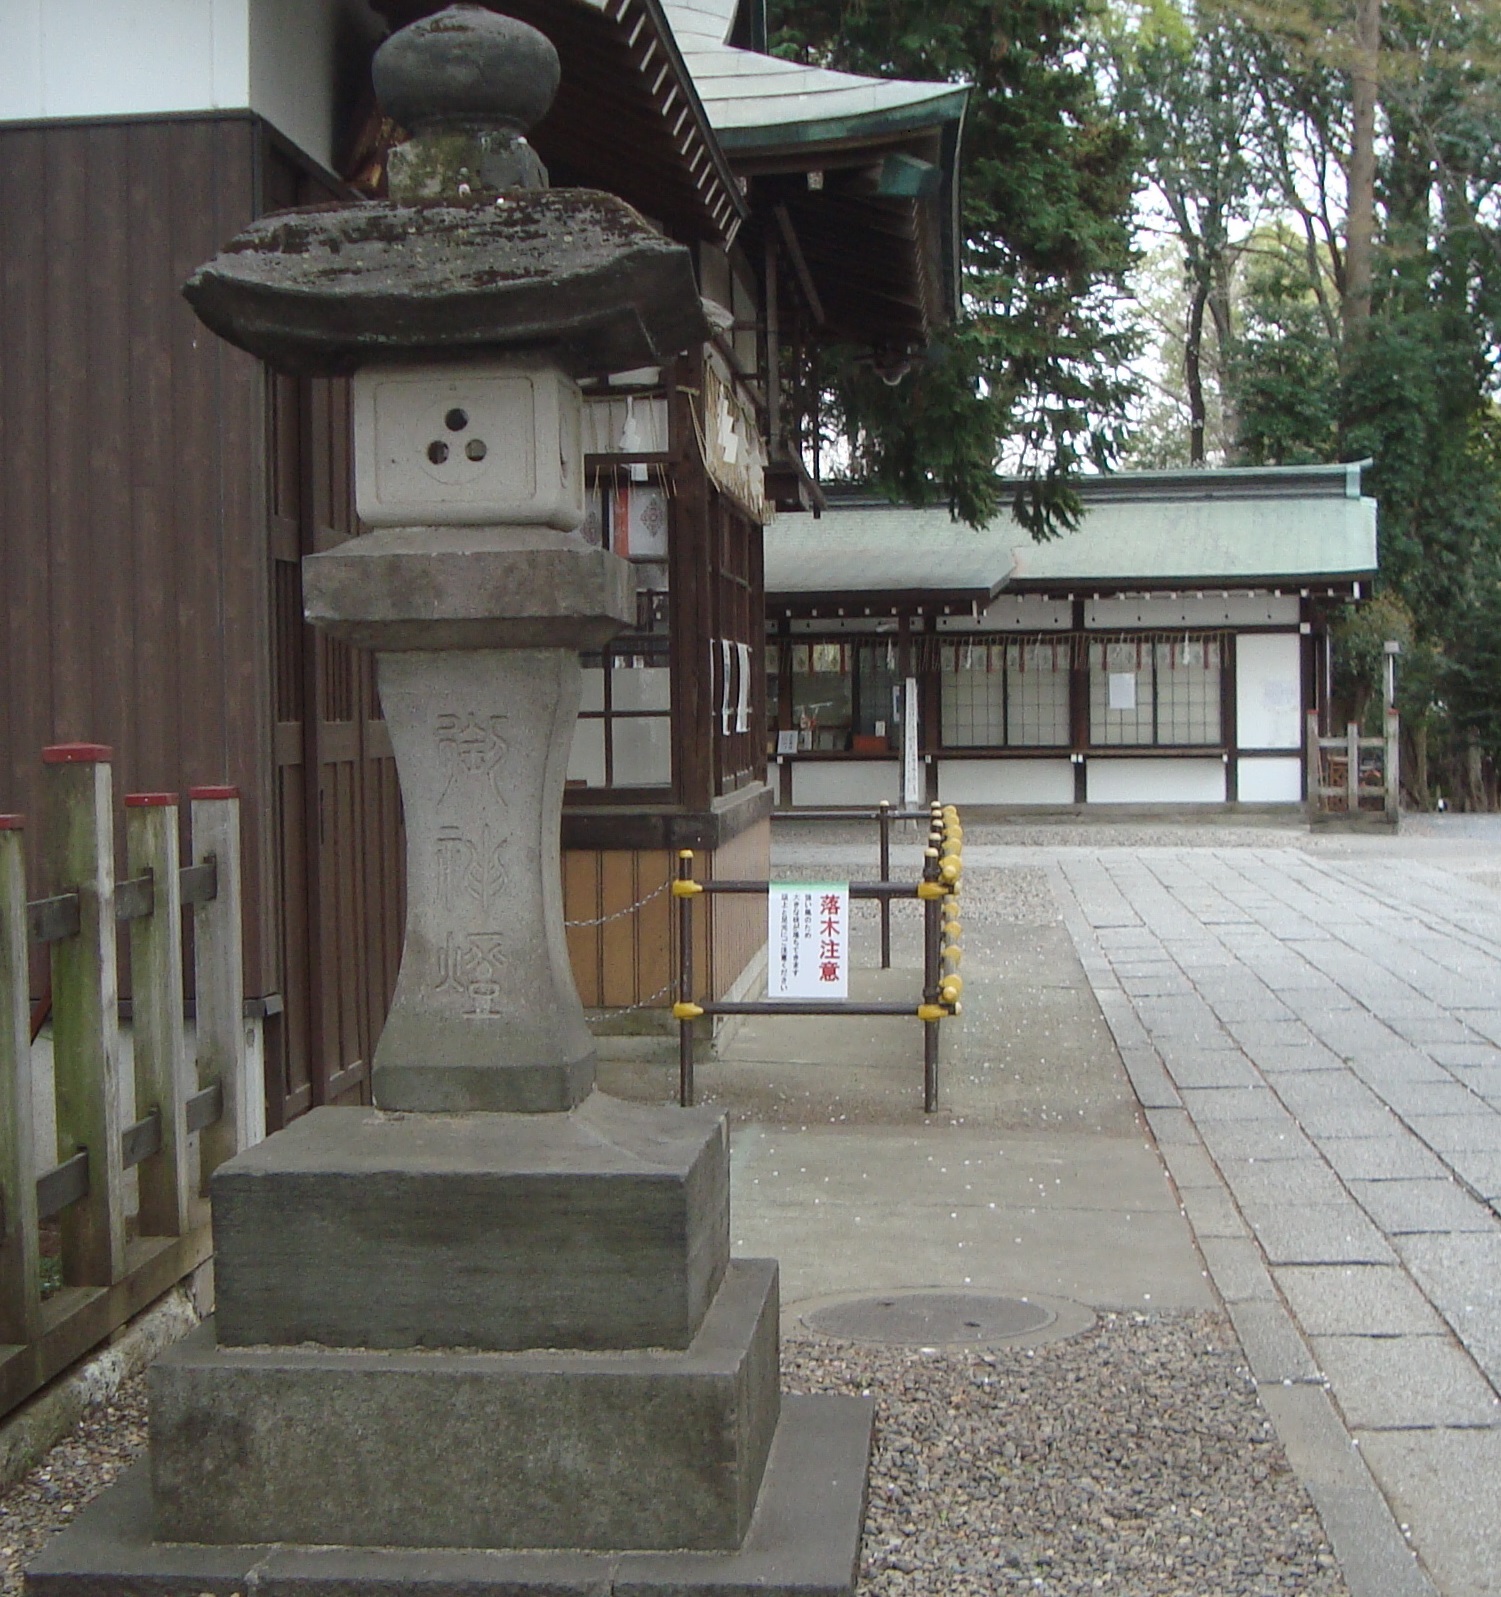 浦和区の調神社の三つ穴灯篭